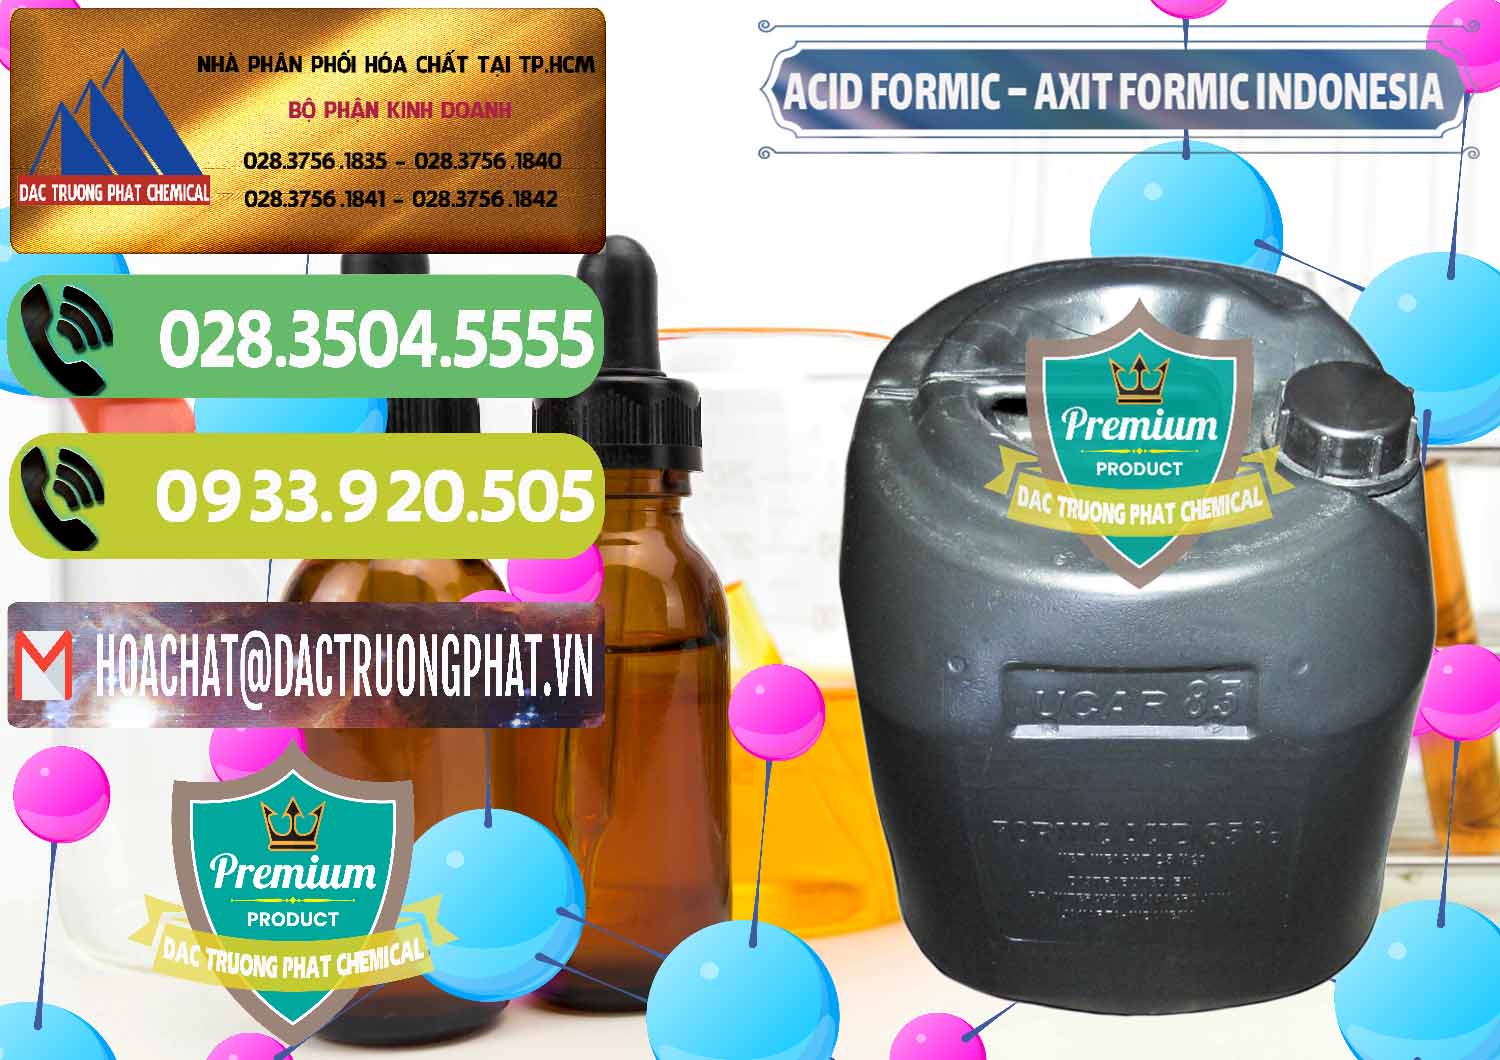 Công ty cung ứng - bán Acid Formic - Axit Formic Indonesia - 0026 - Cty chuyên cung ứng và phân phối hóa chất tại TP.HCM - hoachatmientay.vn